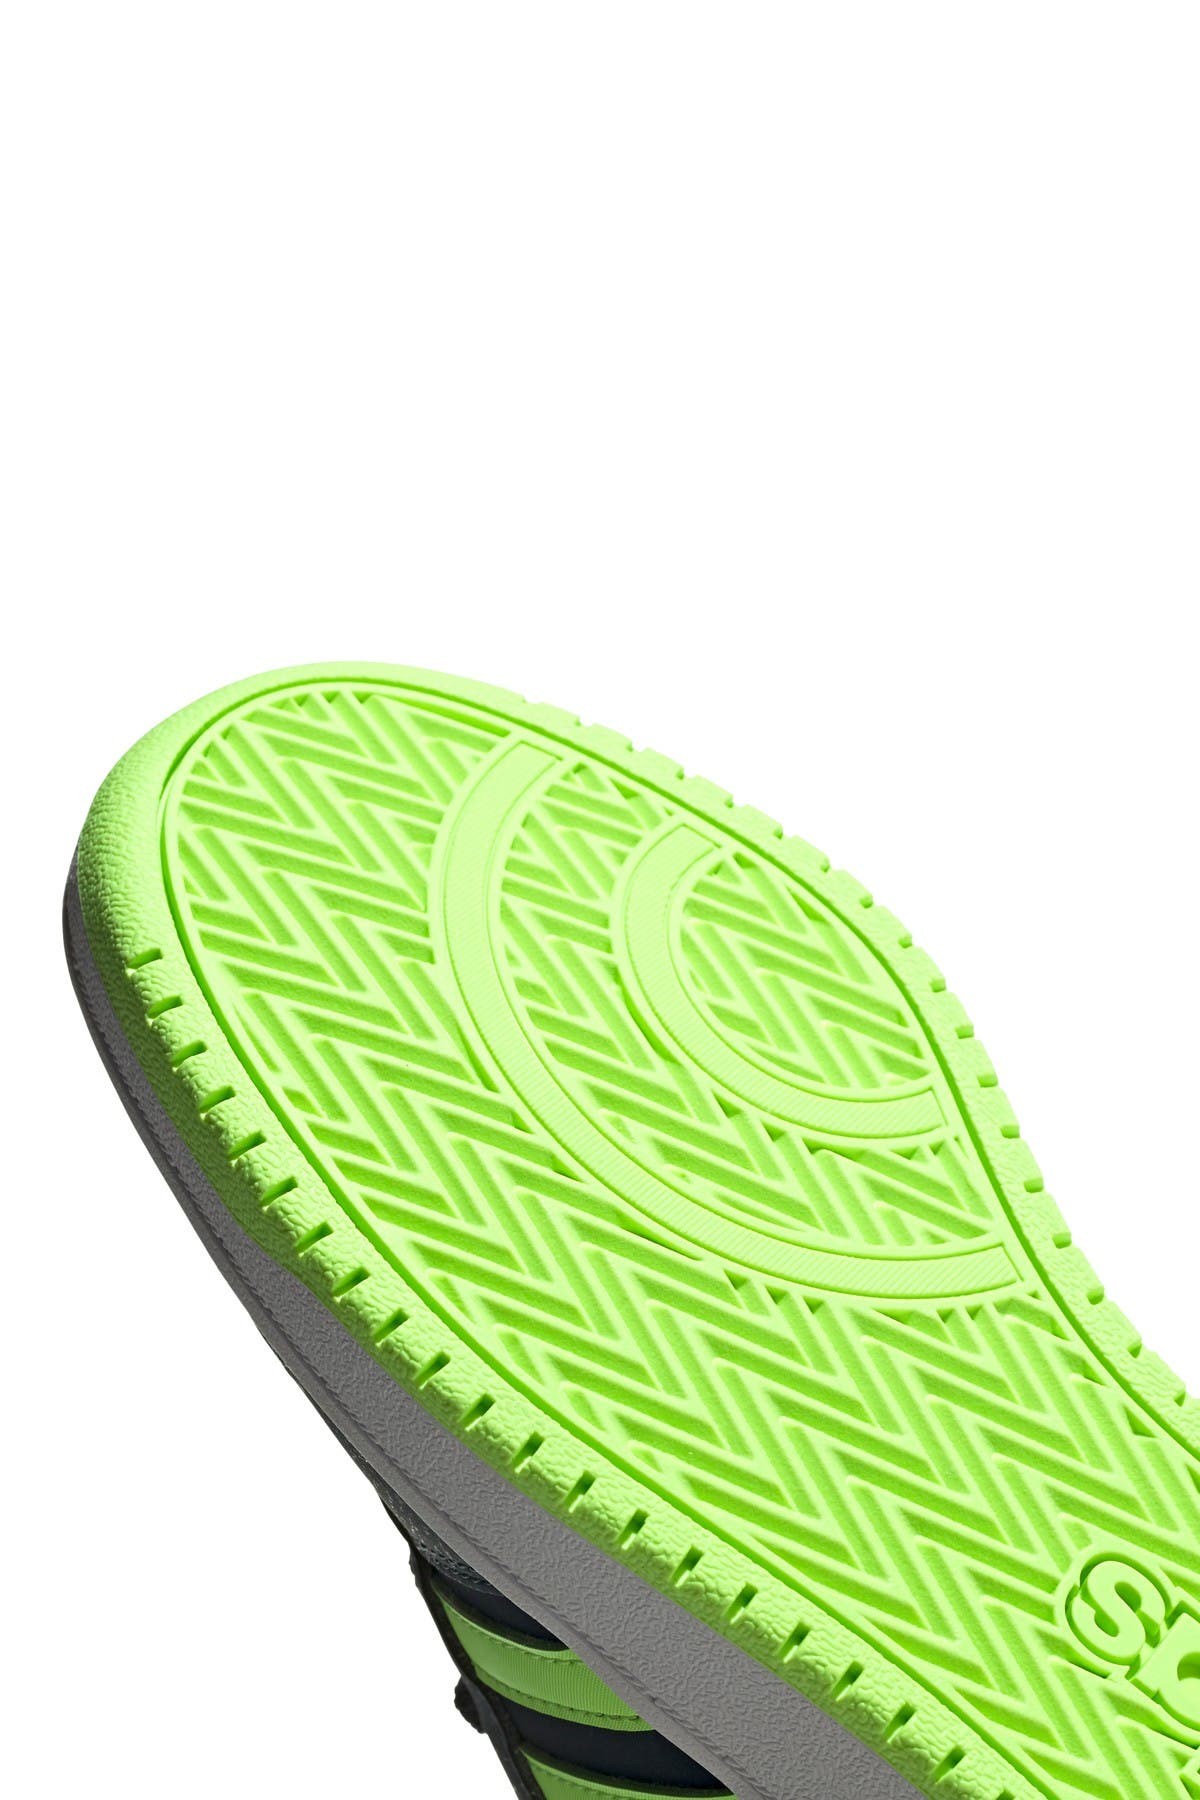 adidas hoops 2.0 mid green